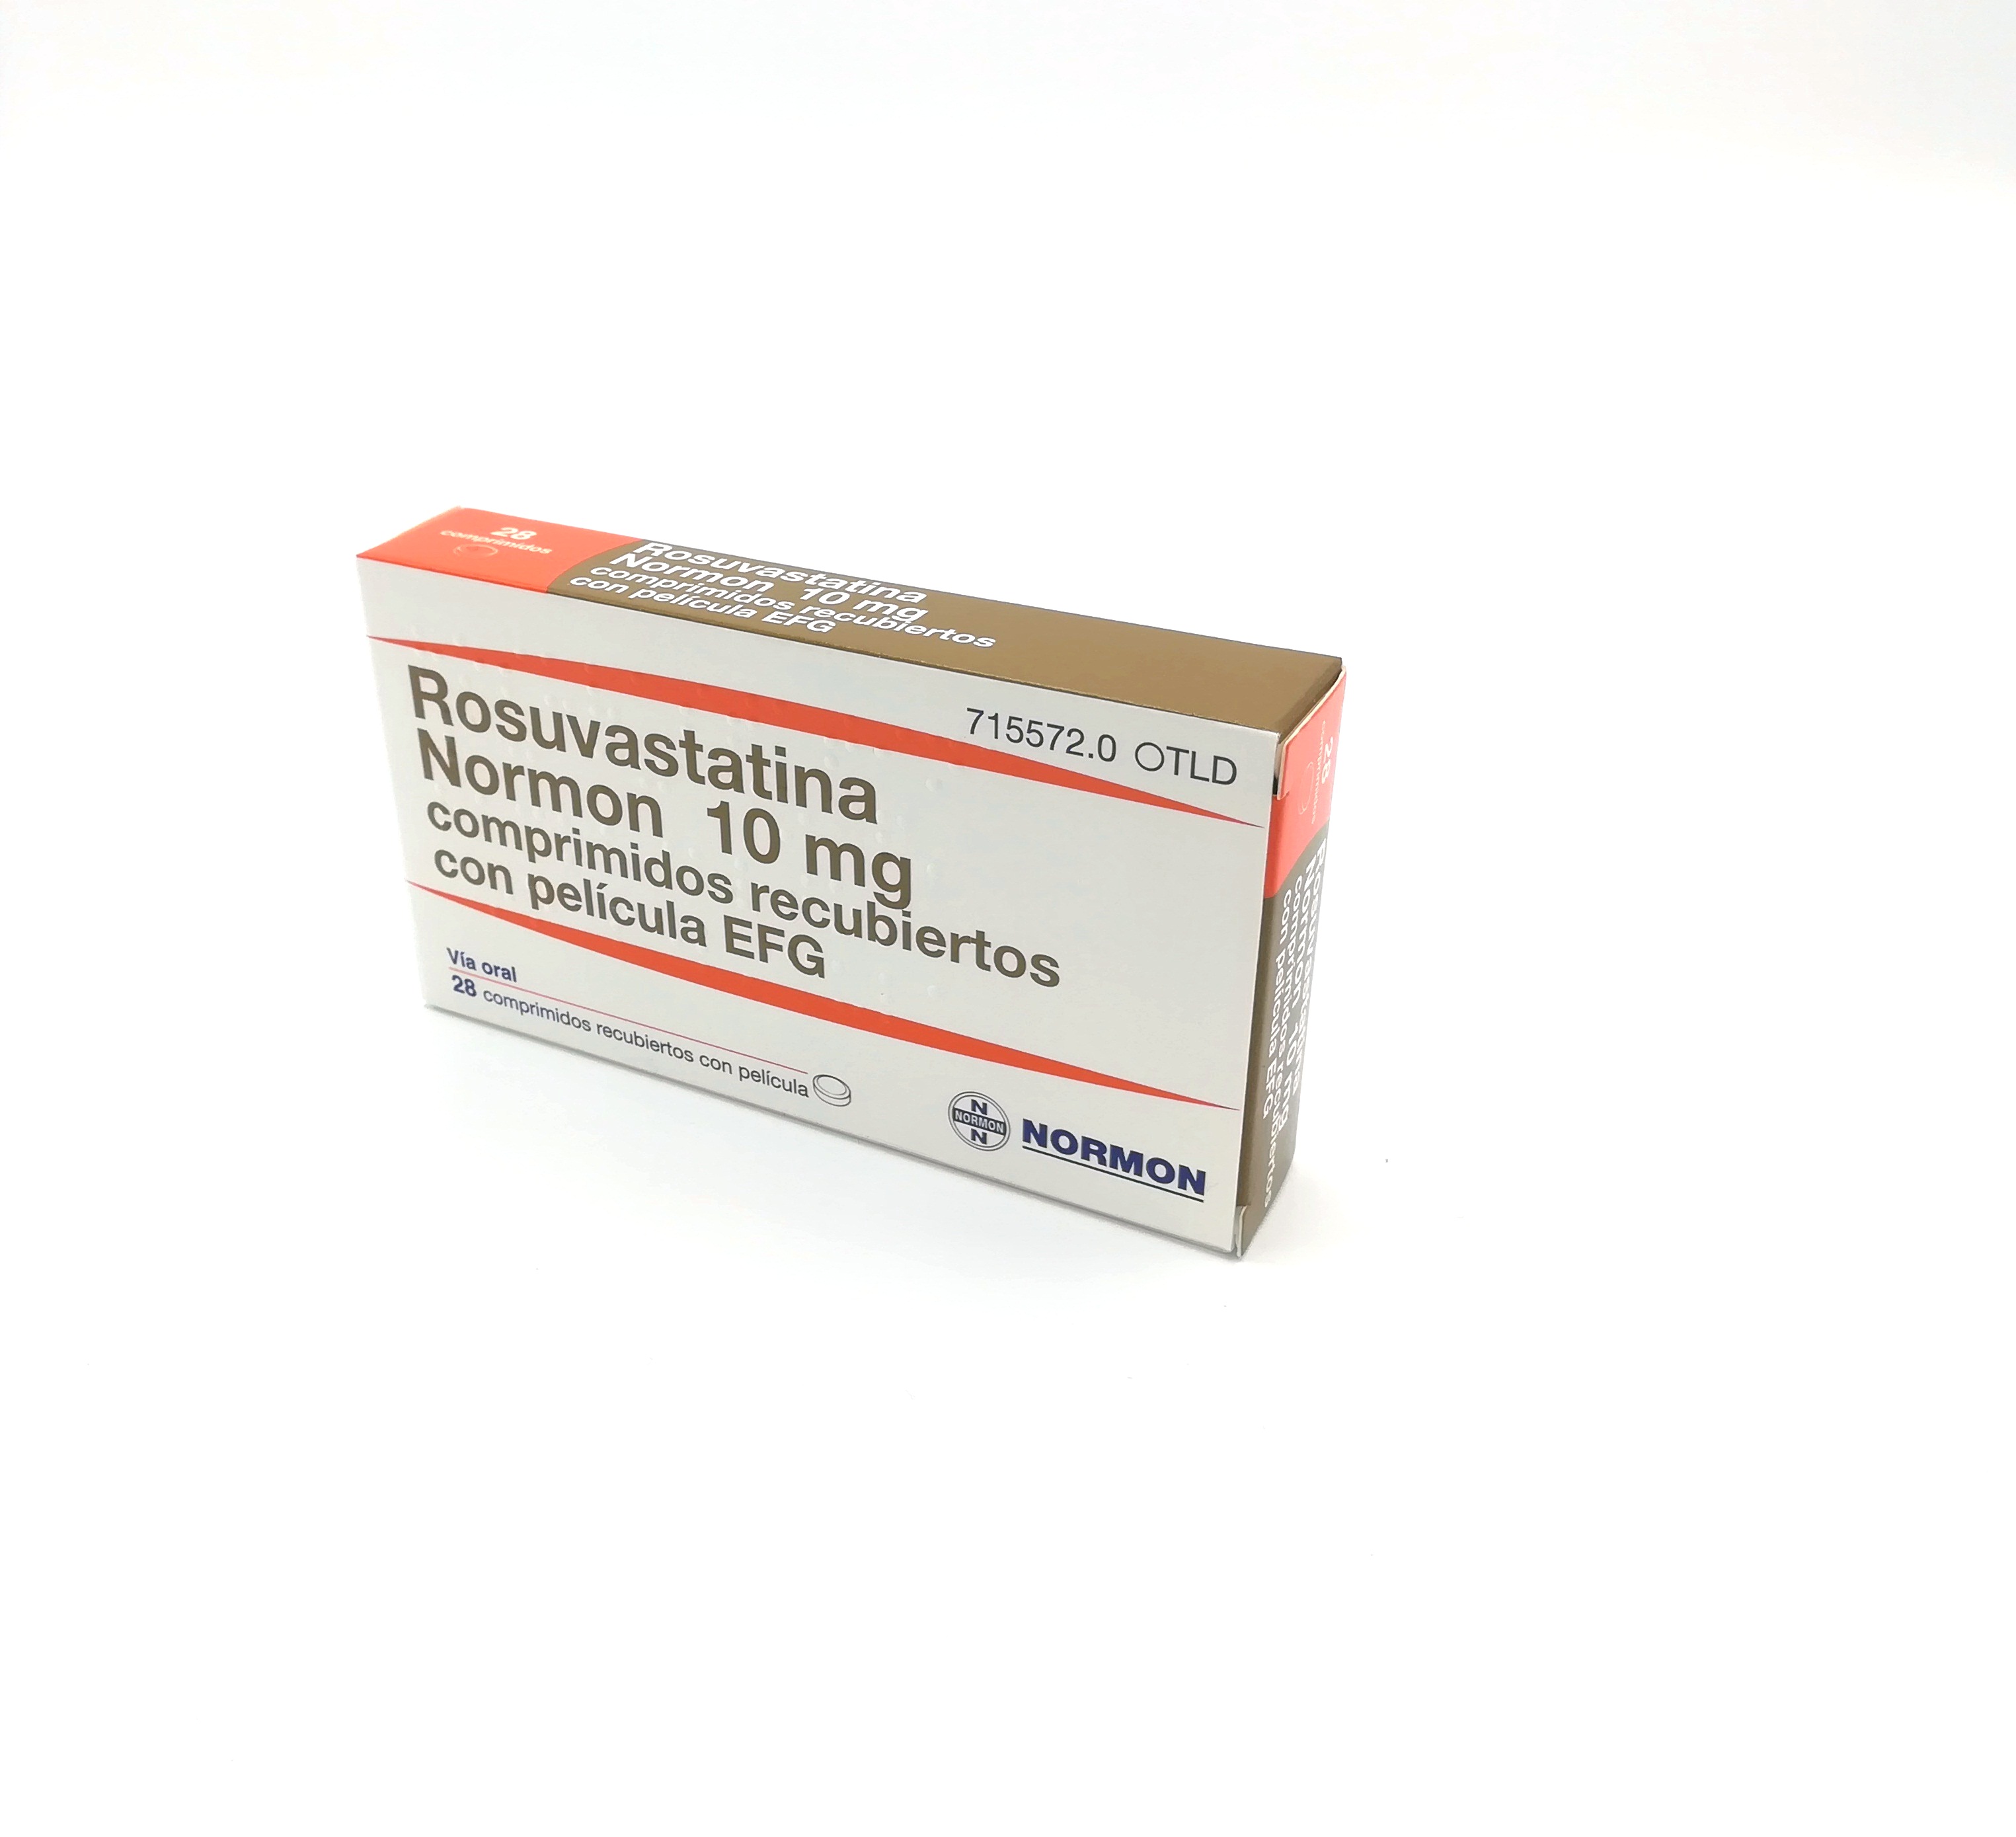 ROSUVASTATINA NORMON EFG 10 mg 28 COMPRIMIDOS RECUBIERTOS